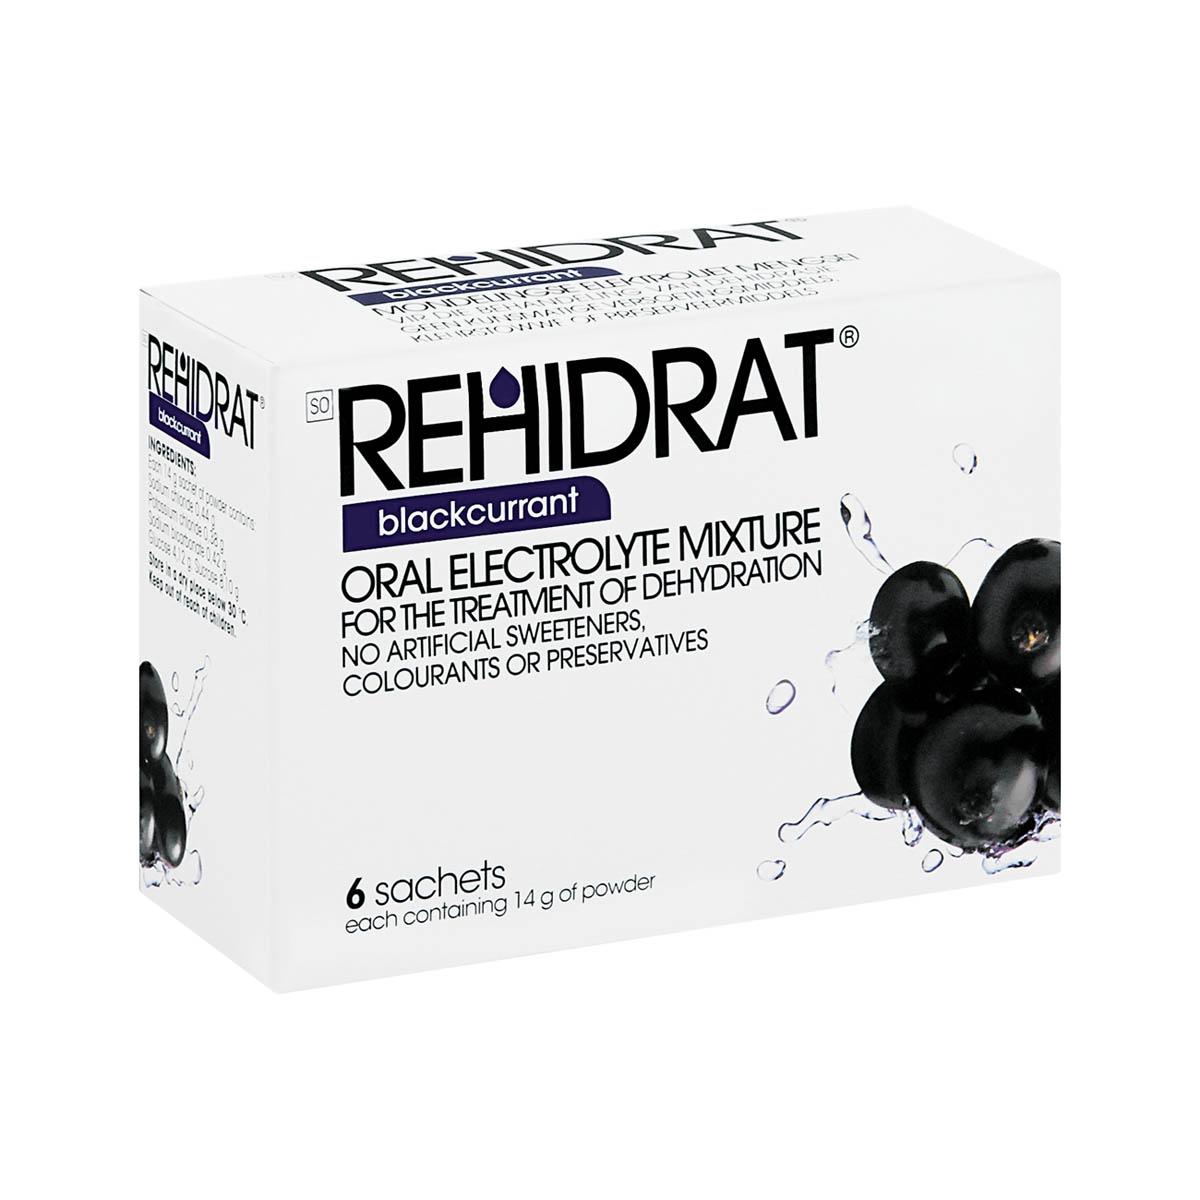 Rehidrat, Oral Electrolyte Mixture, Blackcurrant, 14g X 6 Sachets - 4521